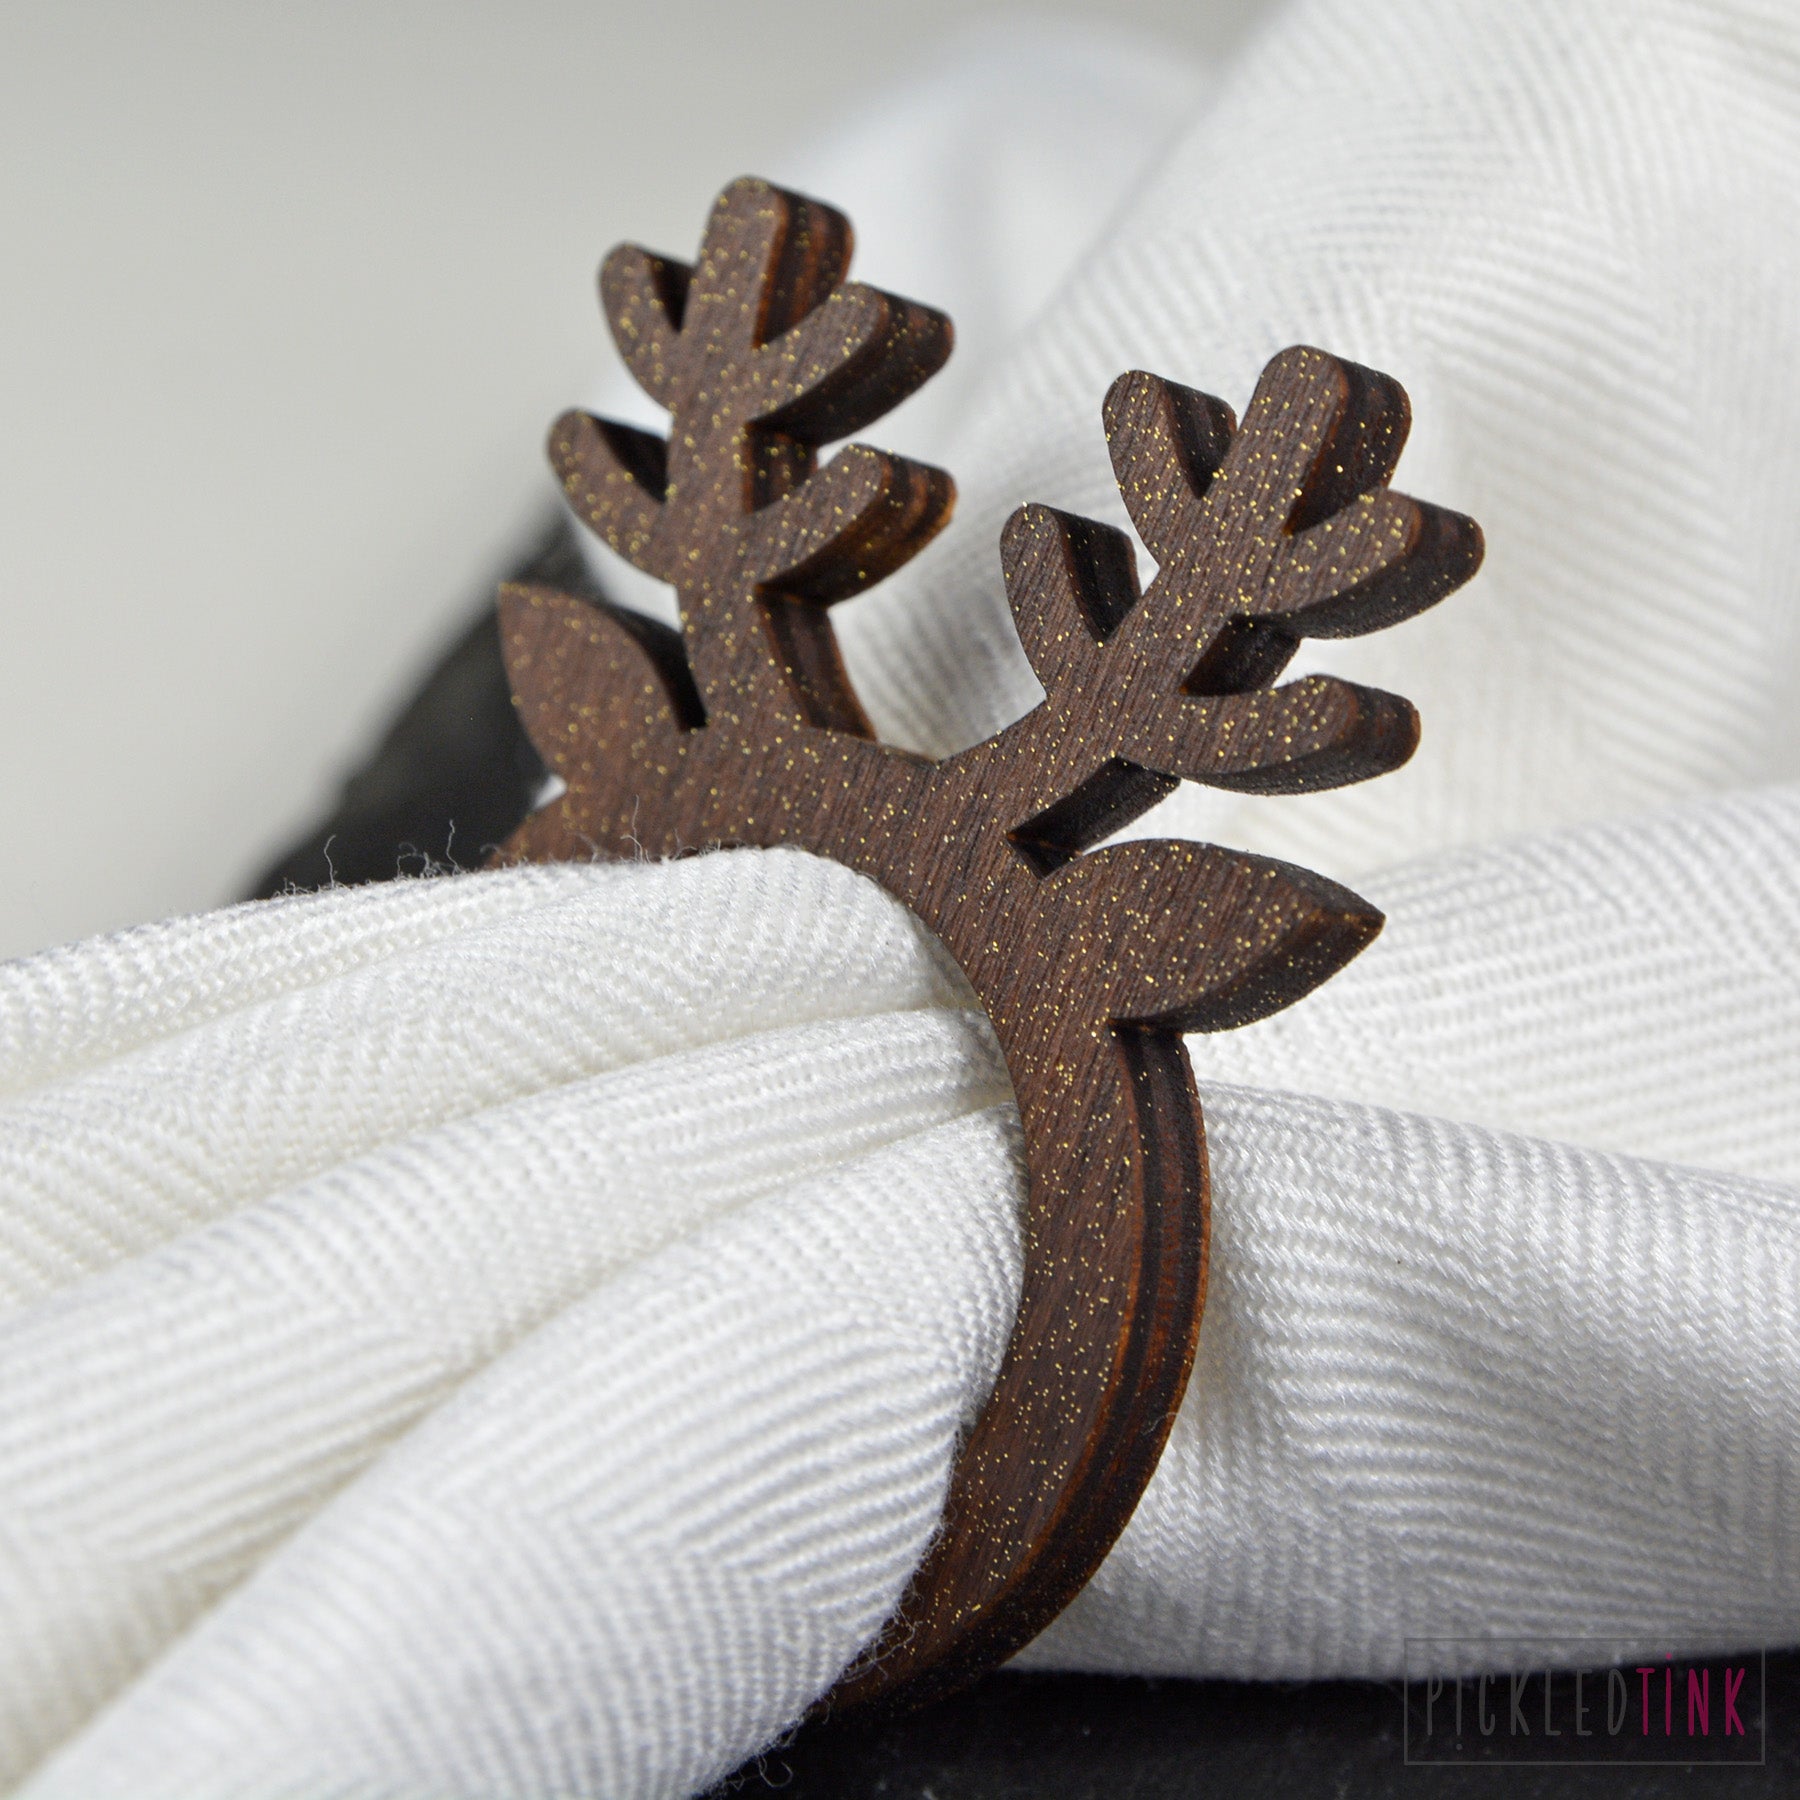 Christmas Reindeer Napkin Rings